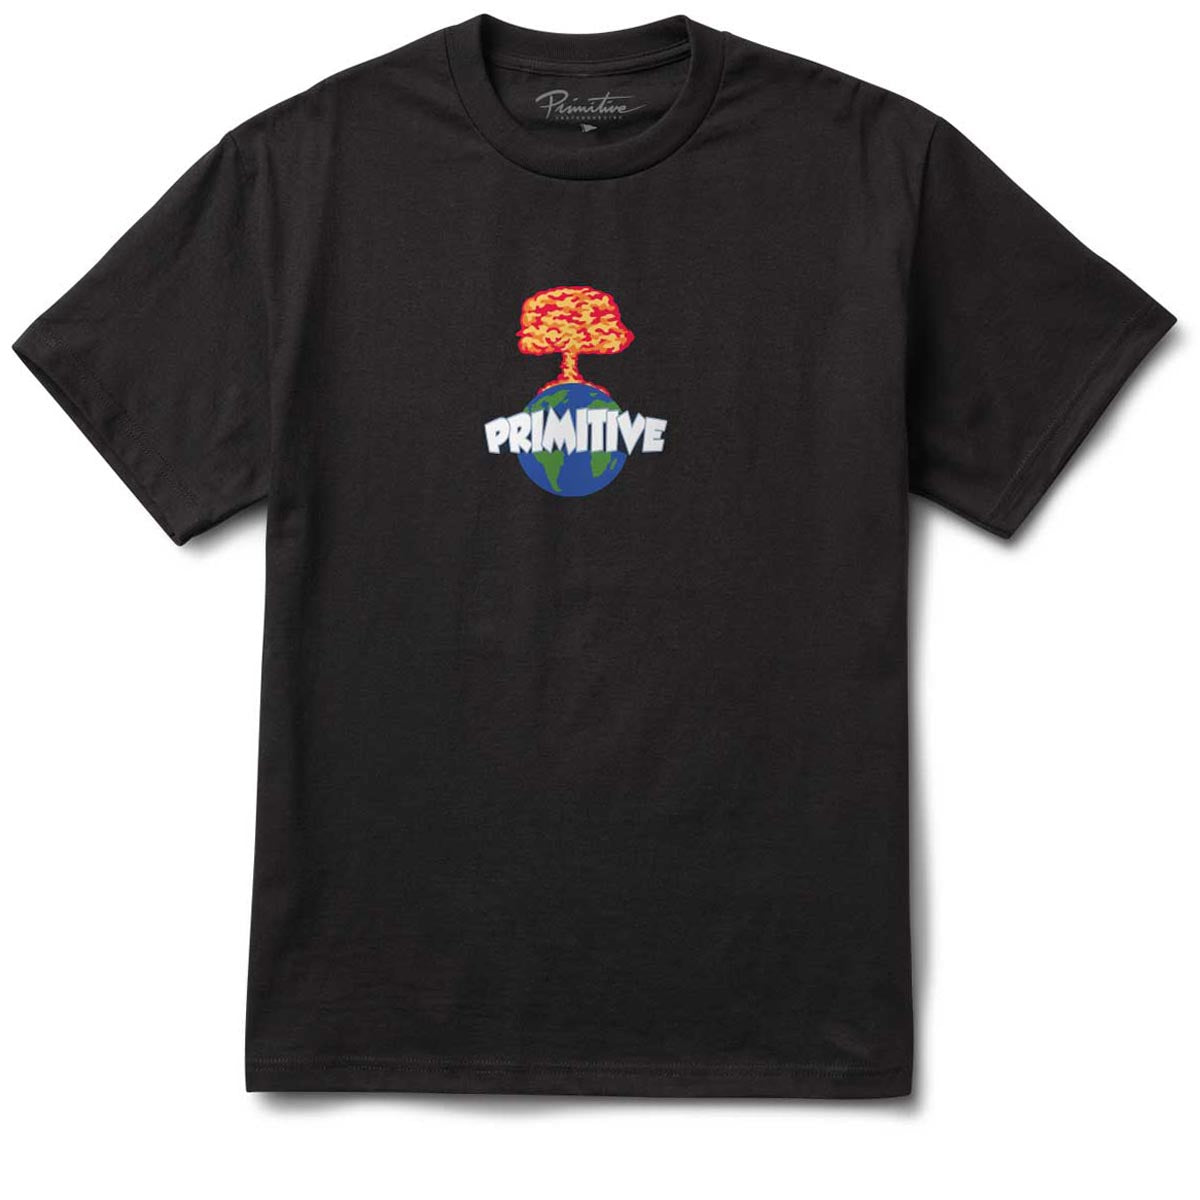 Primitive Oops T-Shirt - Black image 1